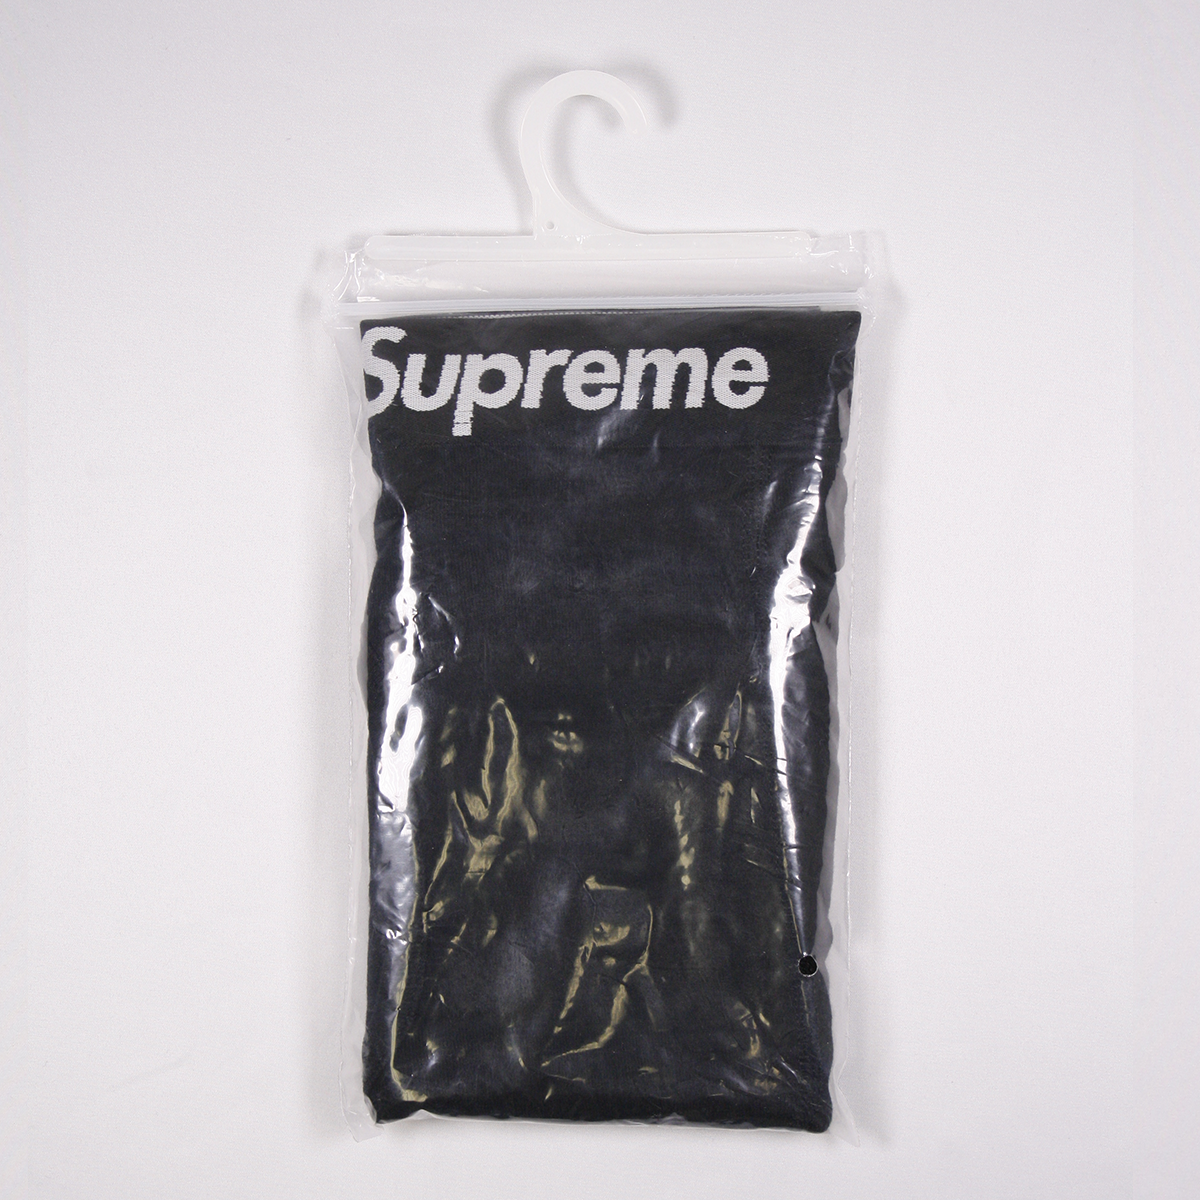 Supreme Men's 100% Authentic Single Pack Black Boxer Briefs